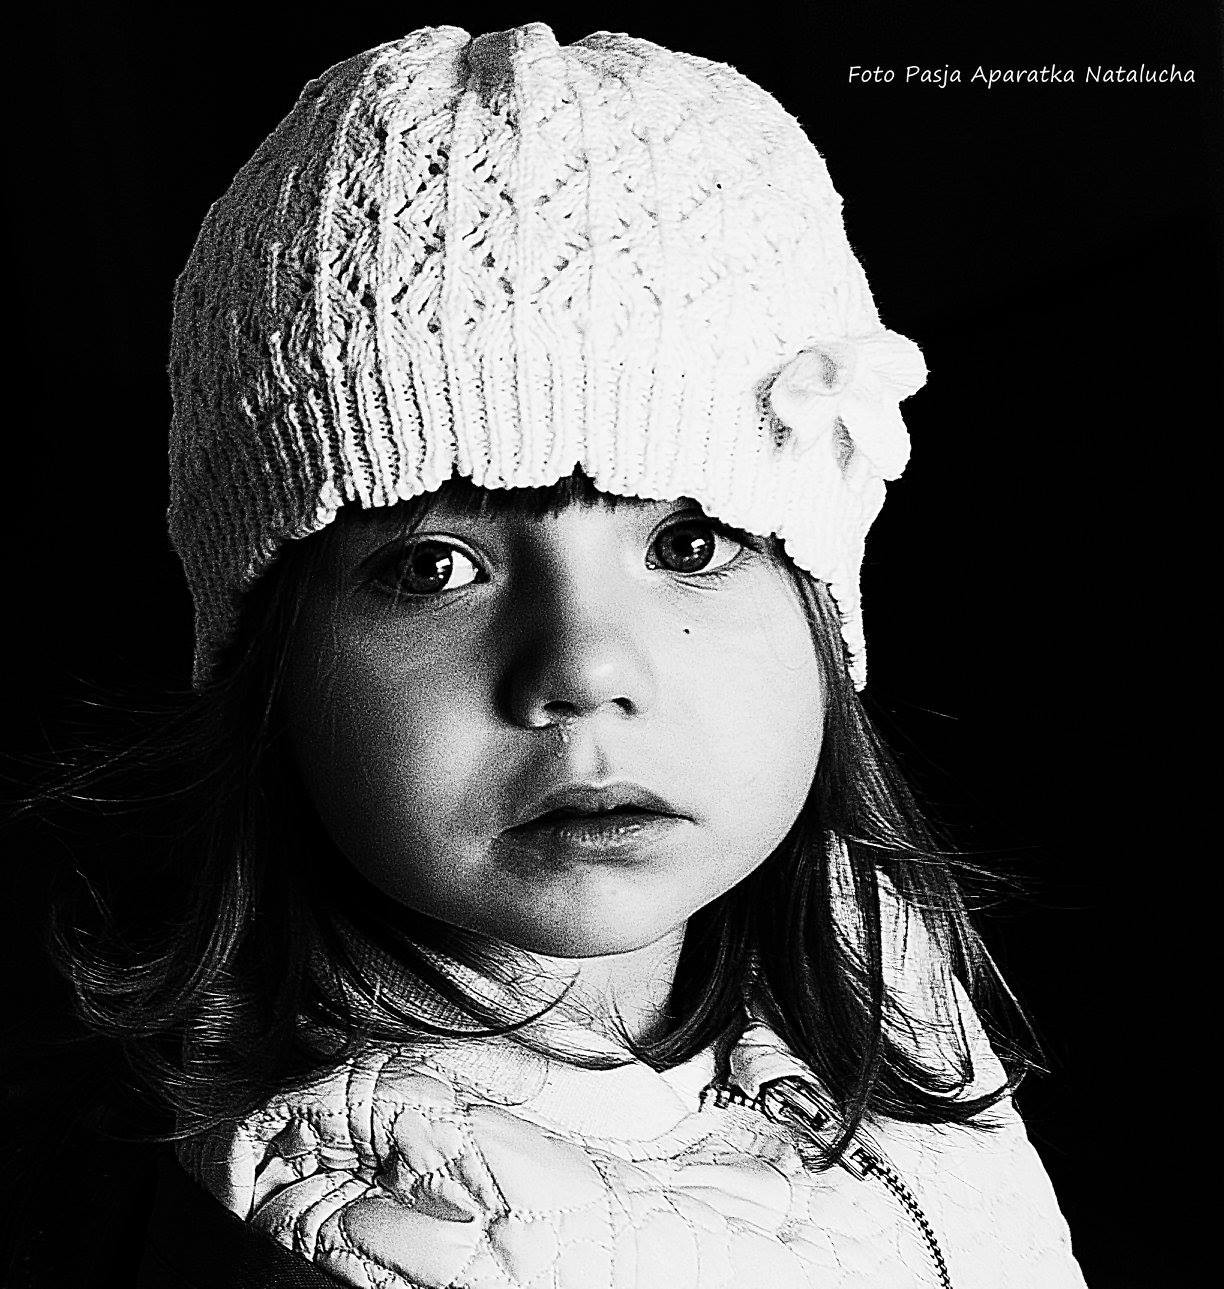 fotograf hannover aparatka-natalucha portfolio sesje dzieciece fotografia dziecieca sesja urodzinowa